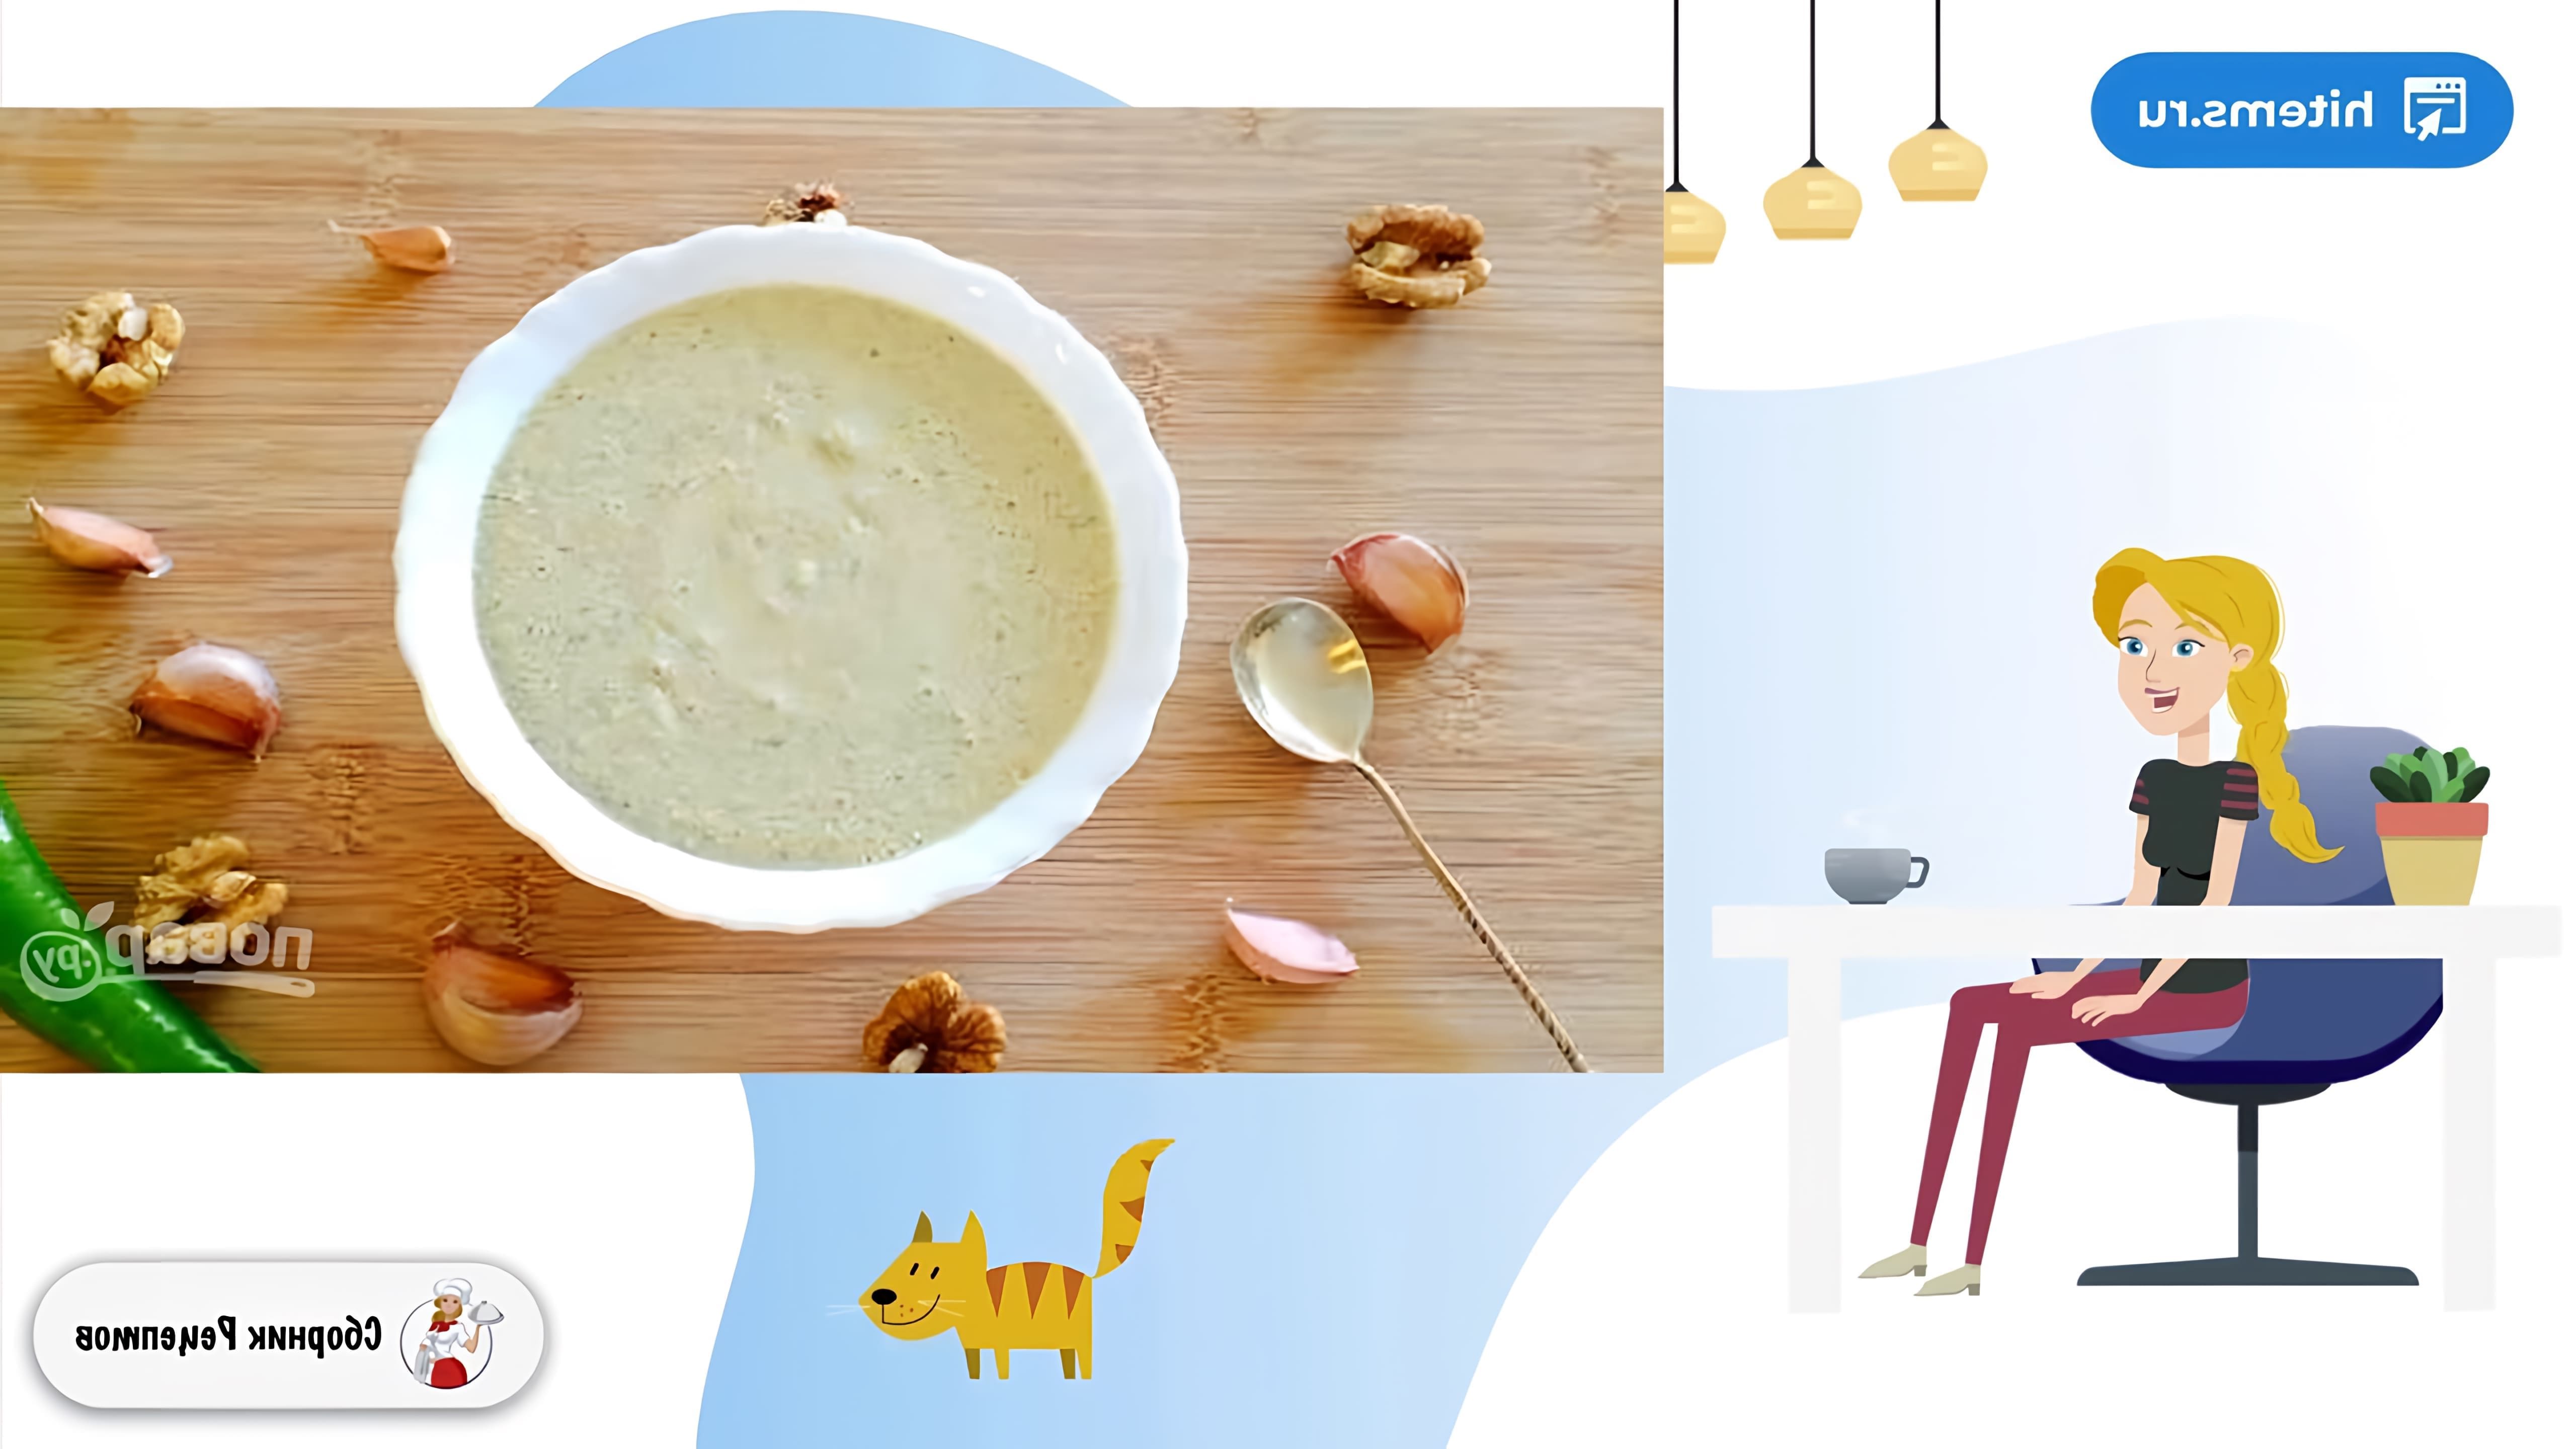 В этом видео демонстрируется рецепт приготовления классического соуса Сациви